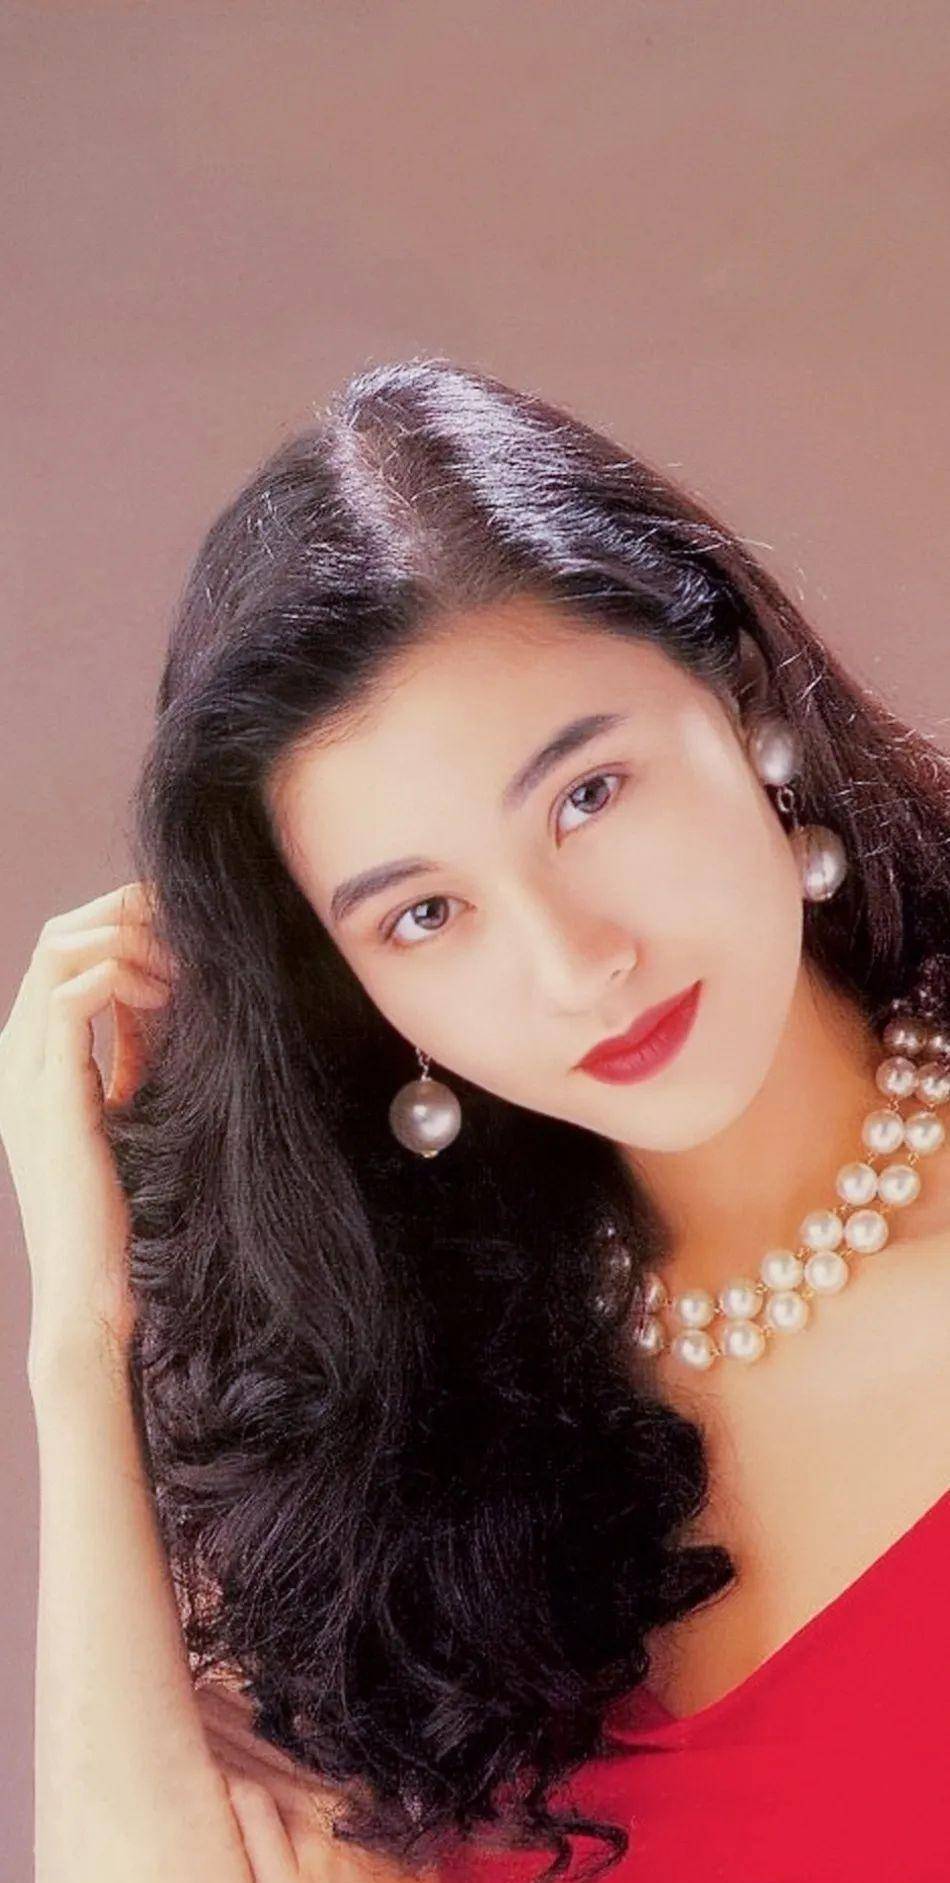 盘点80年代香港女星,没有美颜的时代,颜值依然在线!